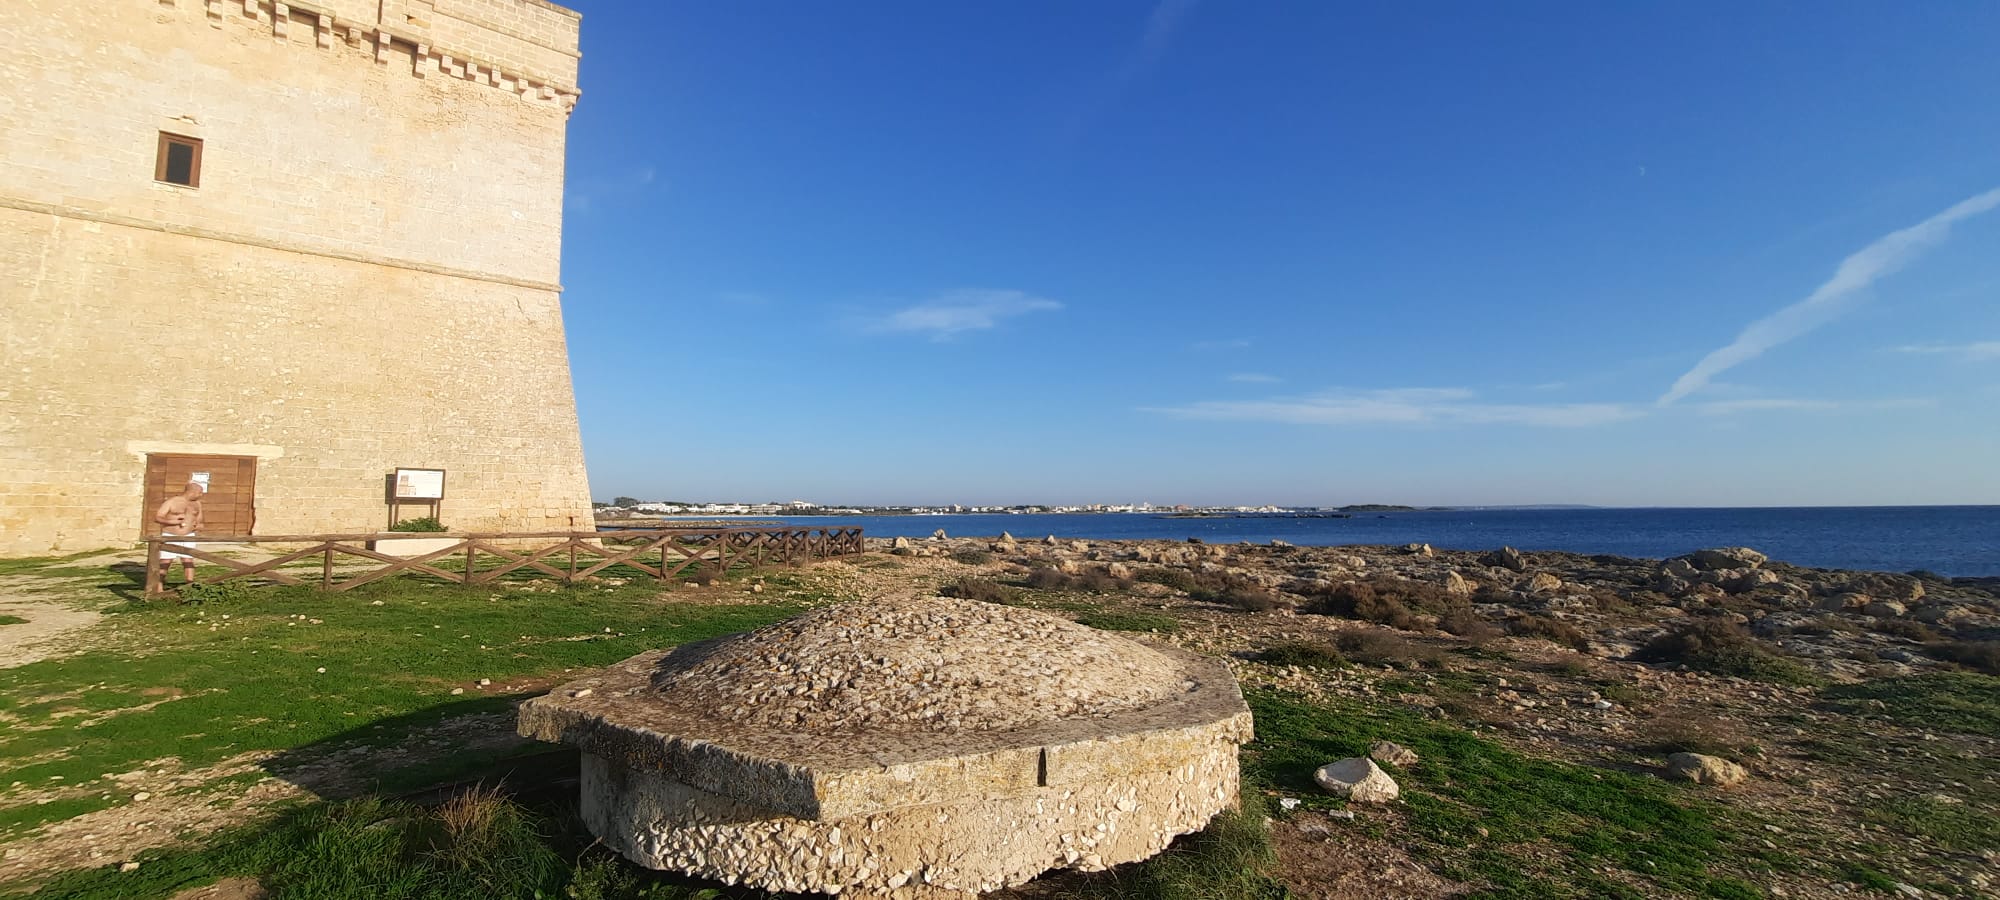 Salentissimo.it: Torre Chianca di Porto Cesareo -  Porto Cesareo, サレントのビーチ